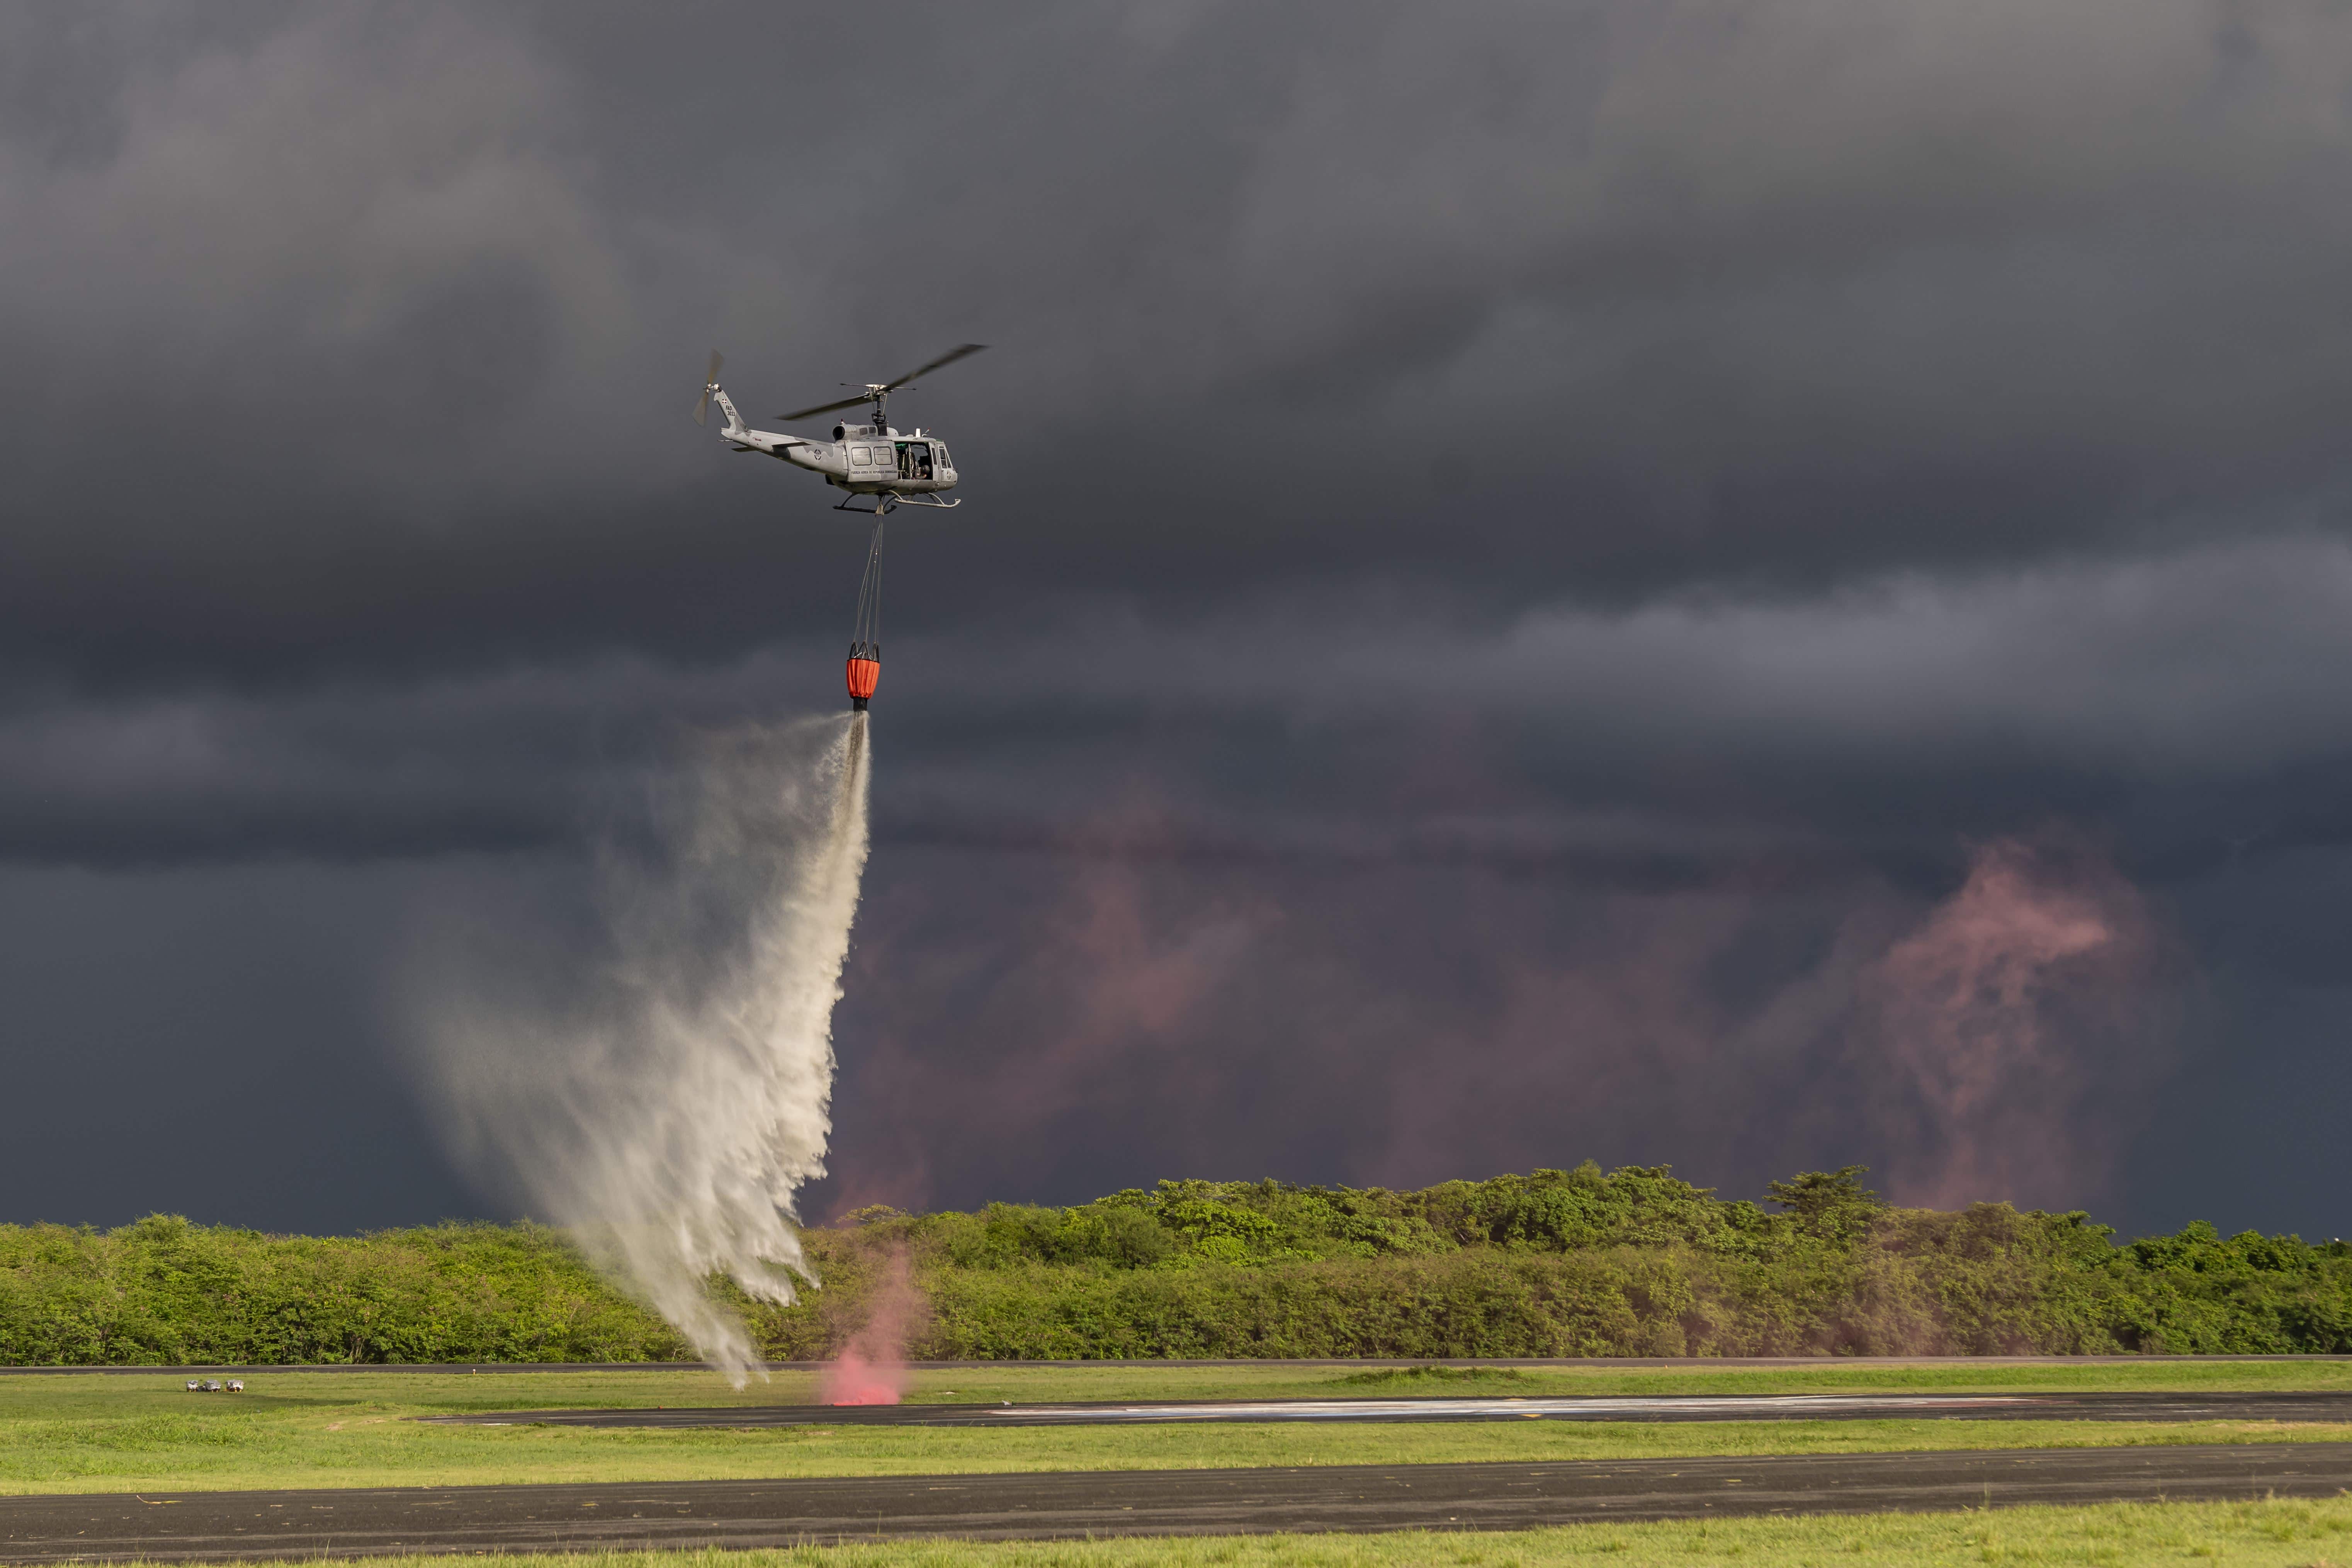 Otra de las exhibiciones del evento fue mostrar las capacidades operativas de la flota de helicópteros Bell Huey UH-1H apagando el fuego.